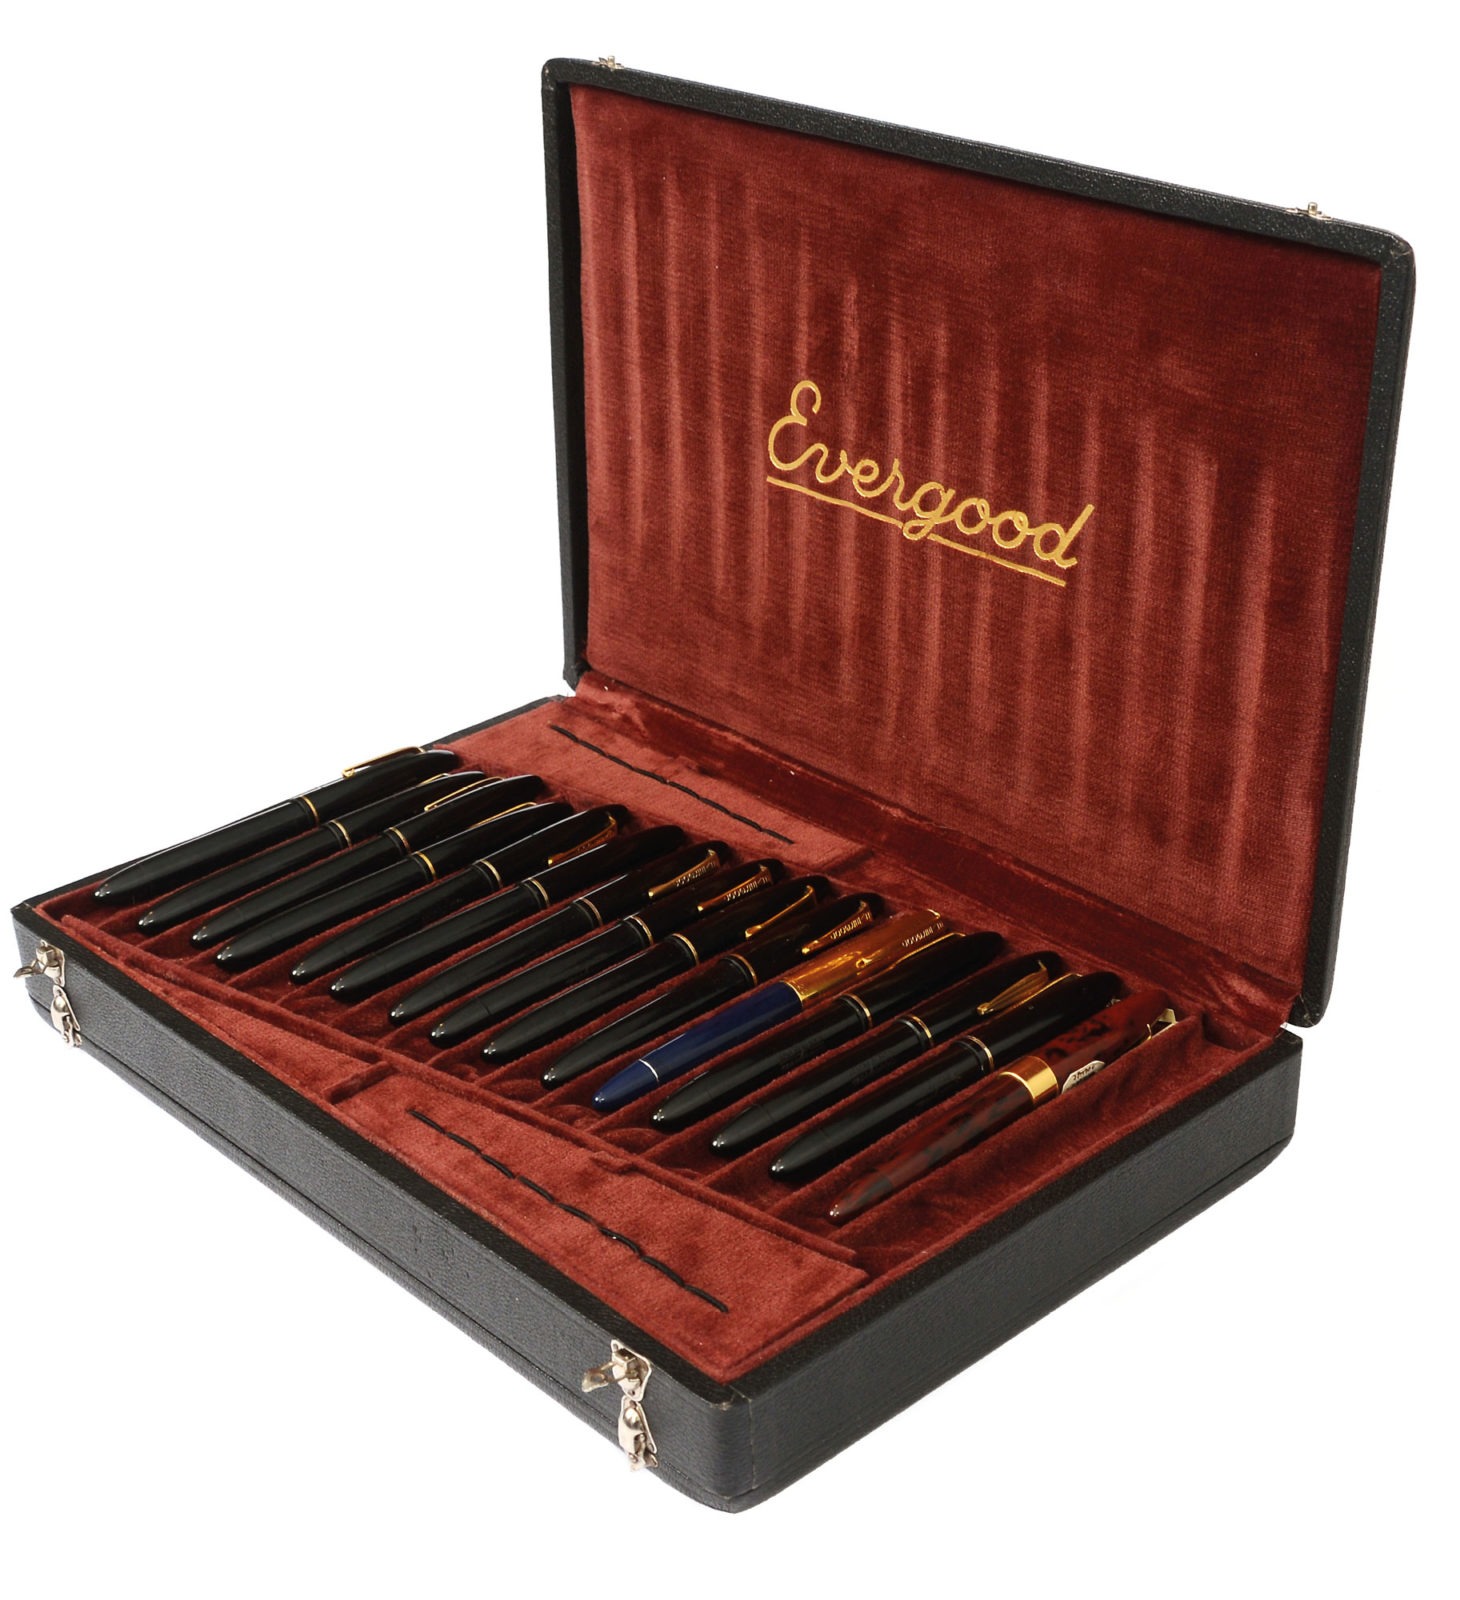 Mallette de commercial ouverte avec des stylos vintage, marron doublée de velours rouge, remplie de stylos à bille noirs.